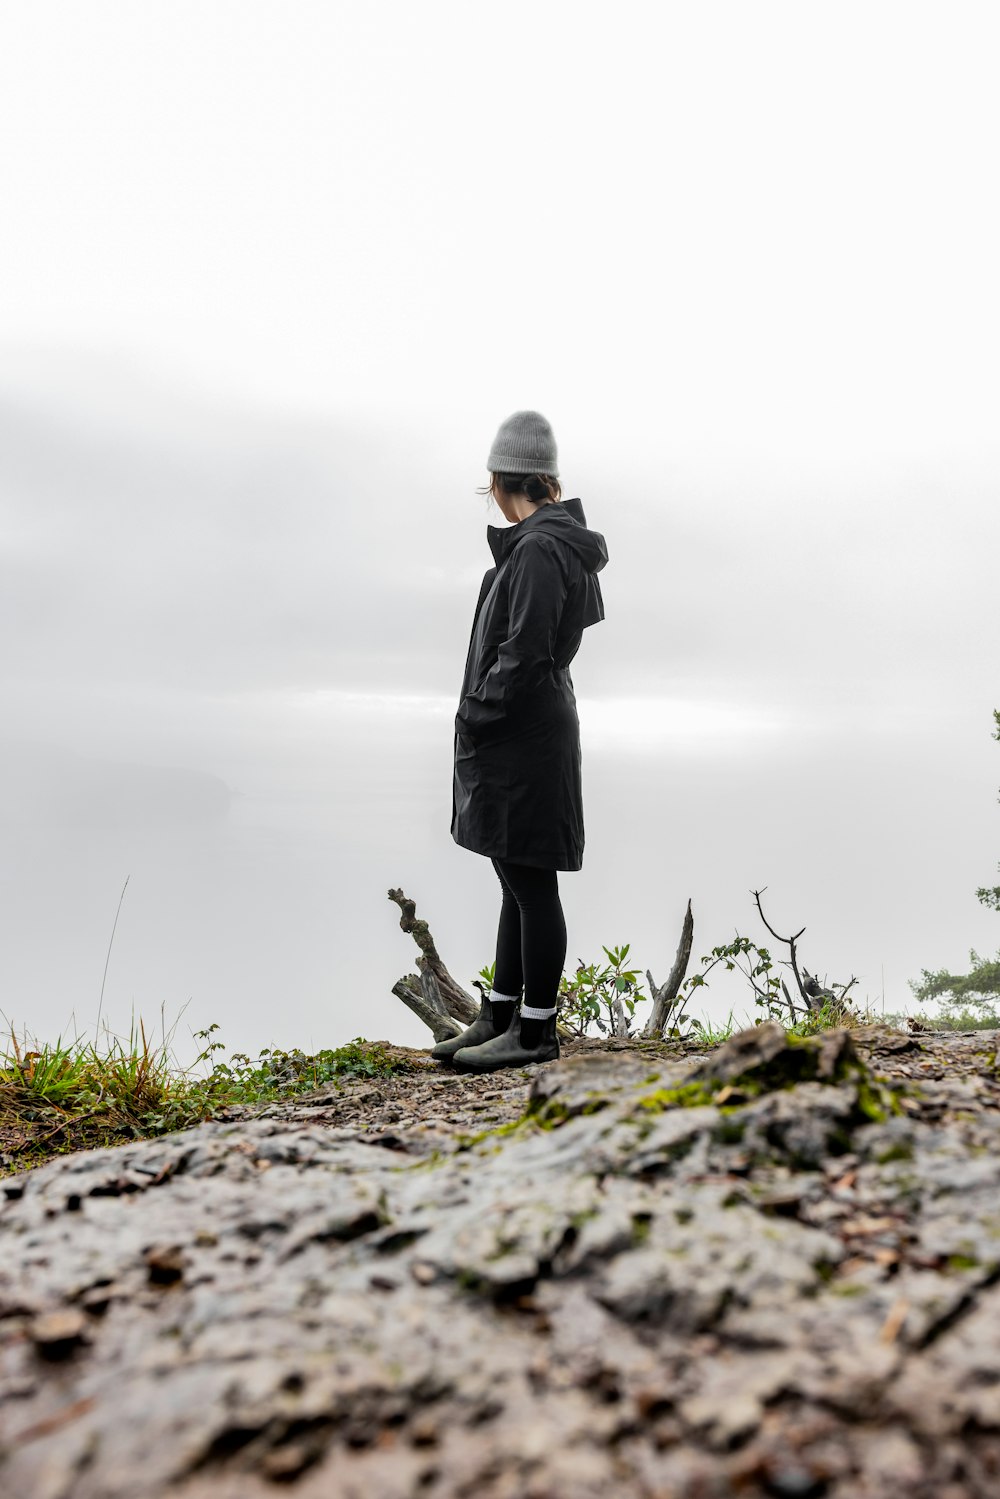 uma pessoa em pé no topo de uma colina rochosa